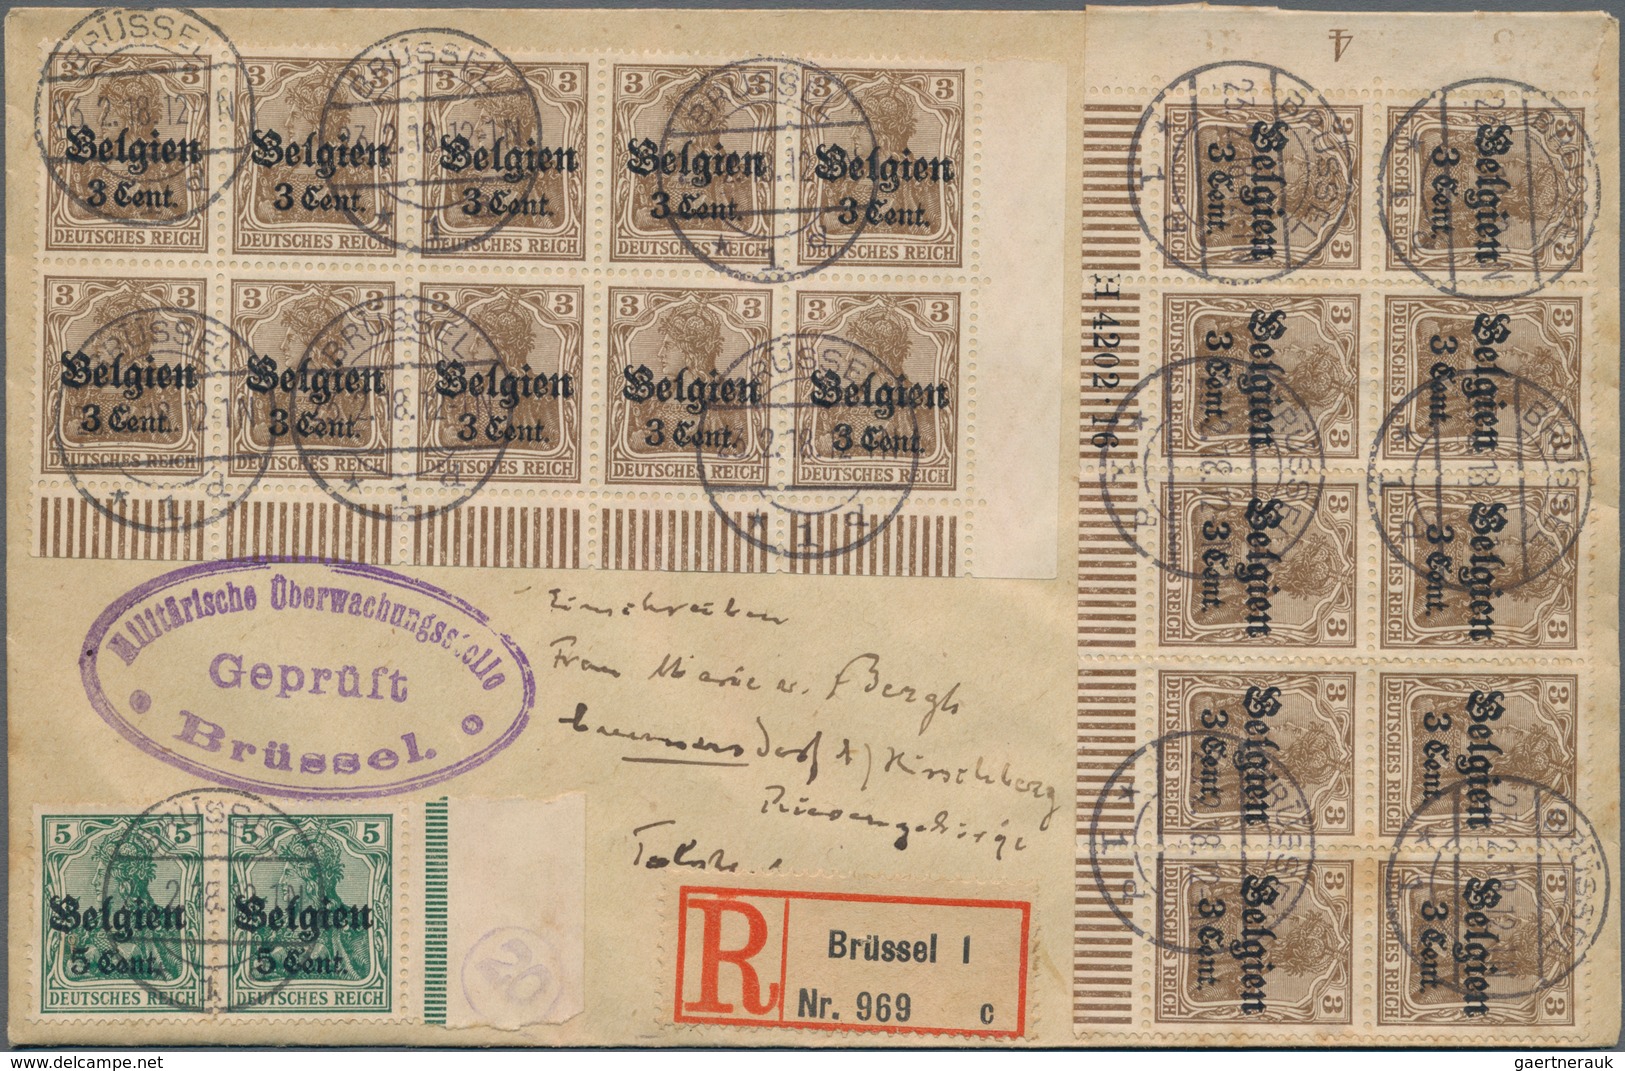 Deutsche Besetzung I. WK: 1915/1918, Belgien, Ober Ost und Polen, Lot von acht besseren Briefen, dab